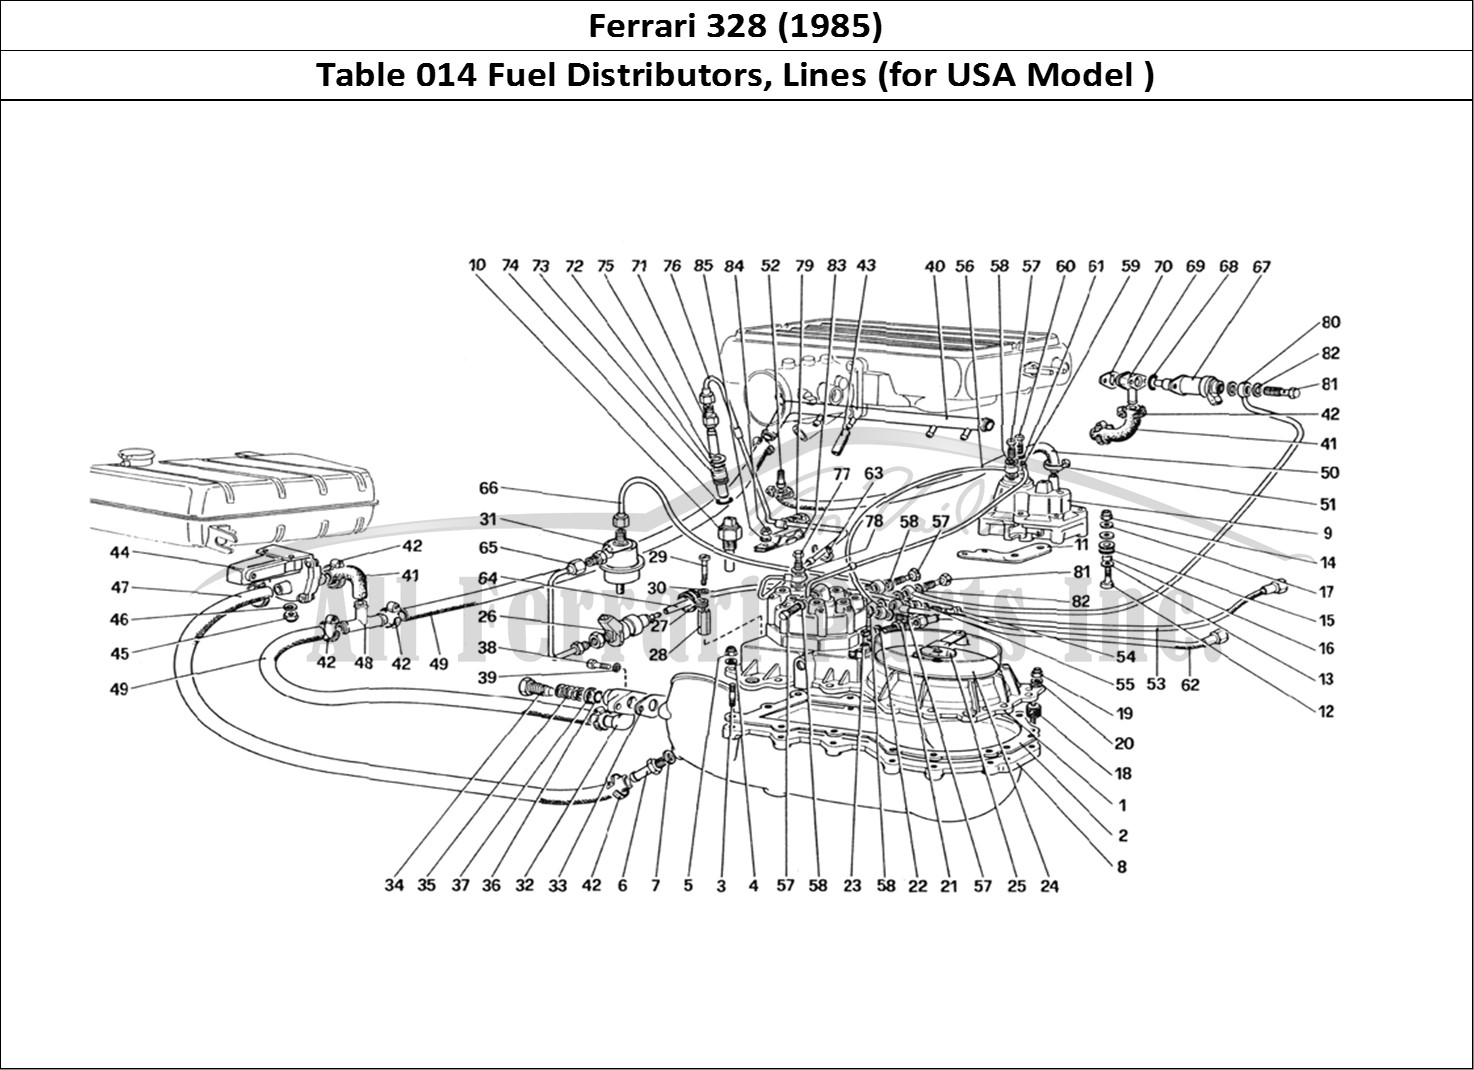 Ferrari Parts Ferrari 328 (1985) Page 014 Fuel Distributors Lines (